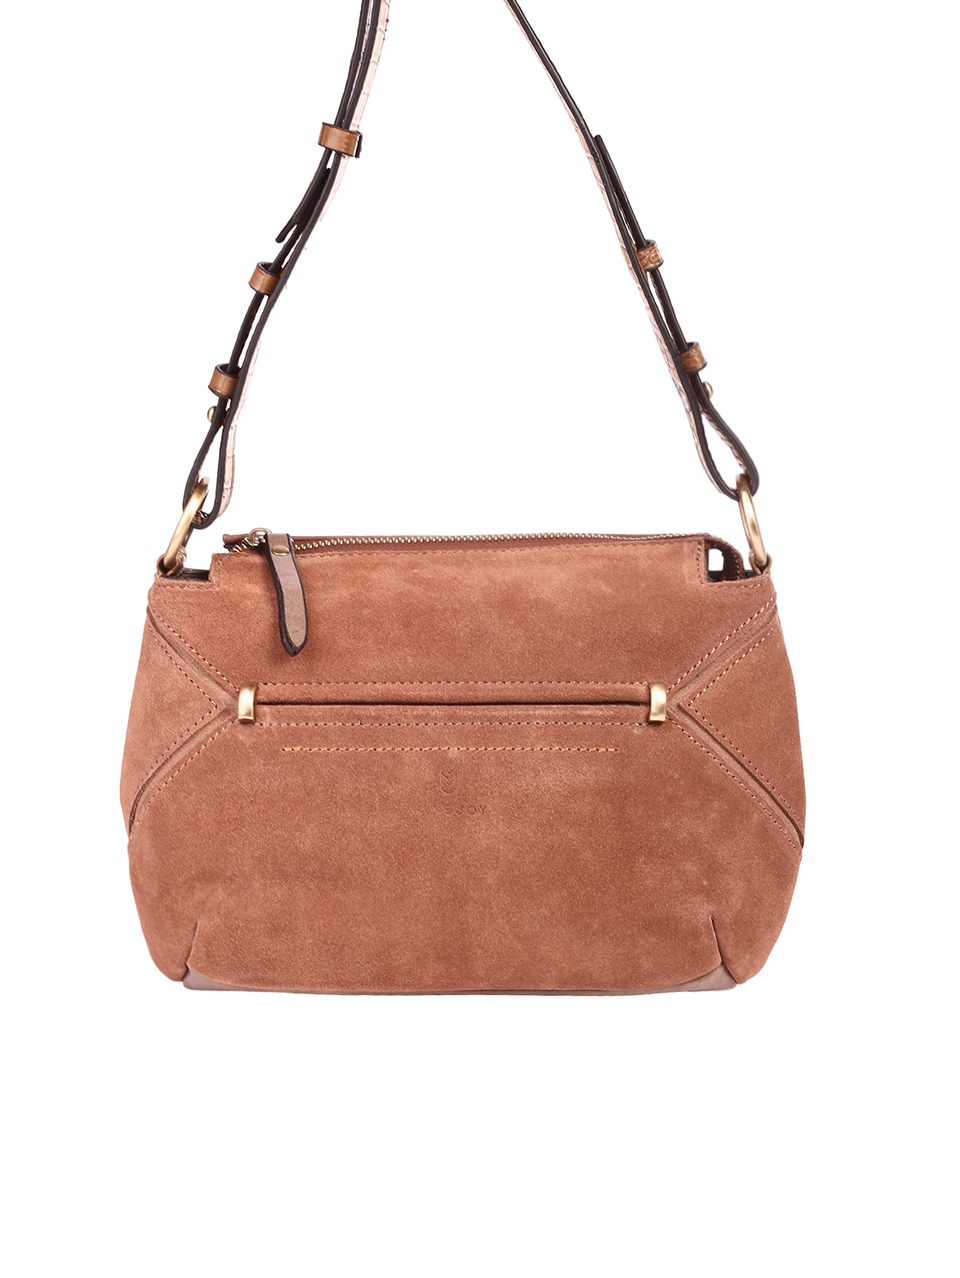 Ежедневна дамска чанта от естествена кожа и велур  в кафяво 9AK-2302 brown